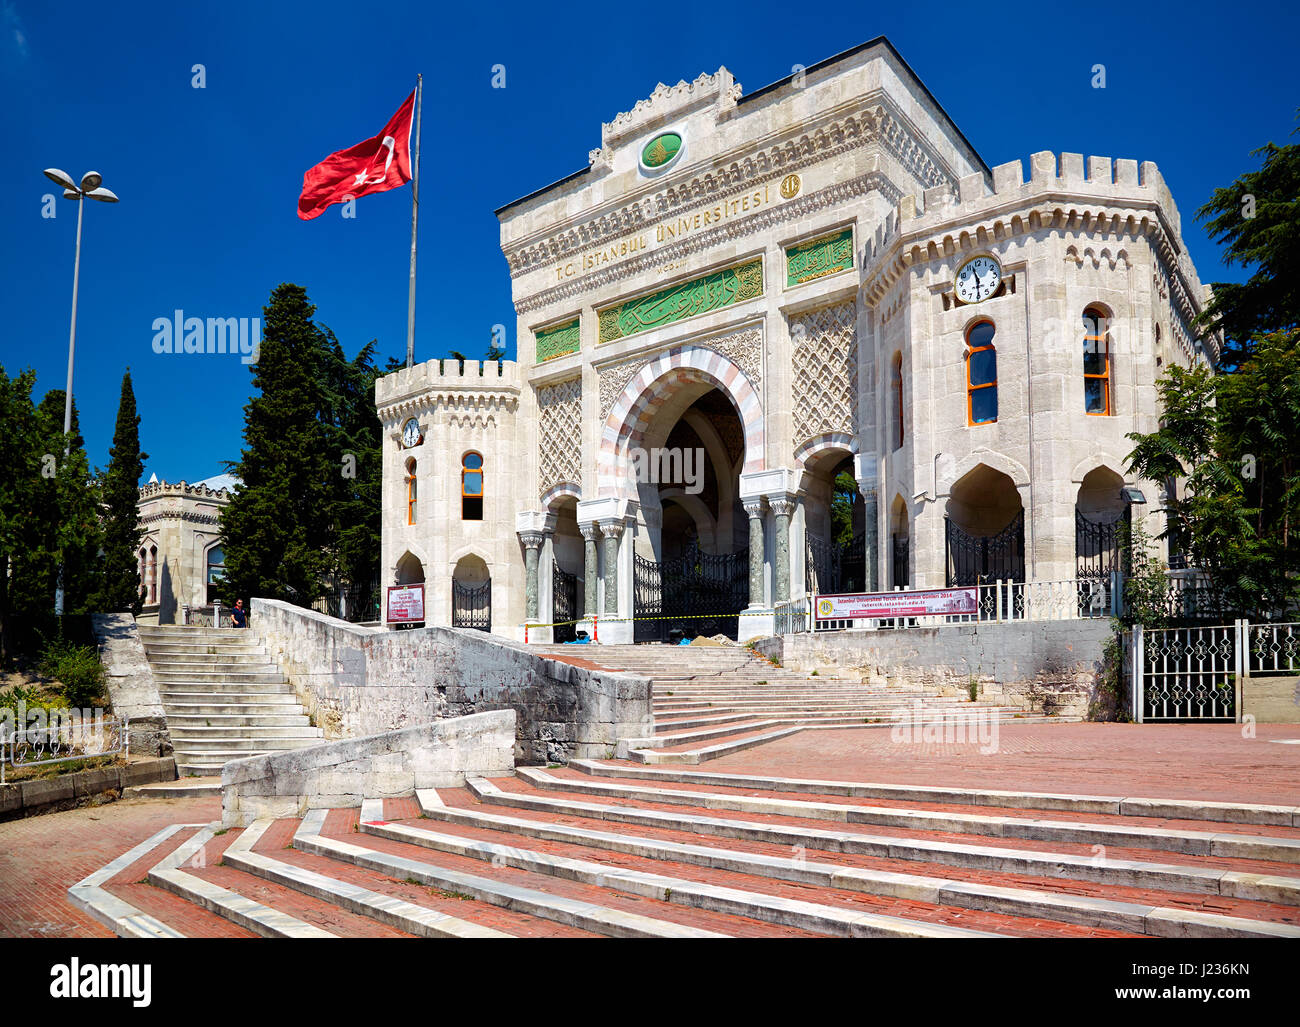 ISTANBUL, Turchia - 14 luglio 2014: le scale e ad arco monumentale in stile moresco gate dell'Università di Istanbul sulla Piazza Beyazit, Istanbul, Turchia Foto Stock